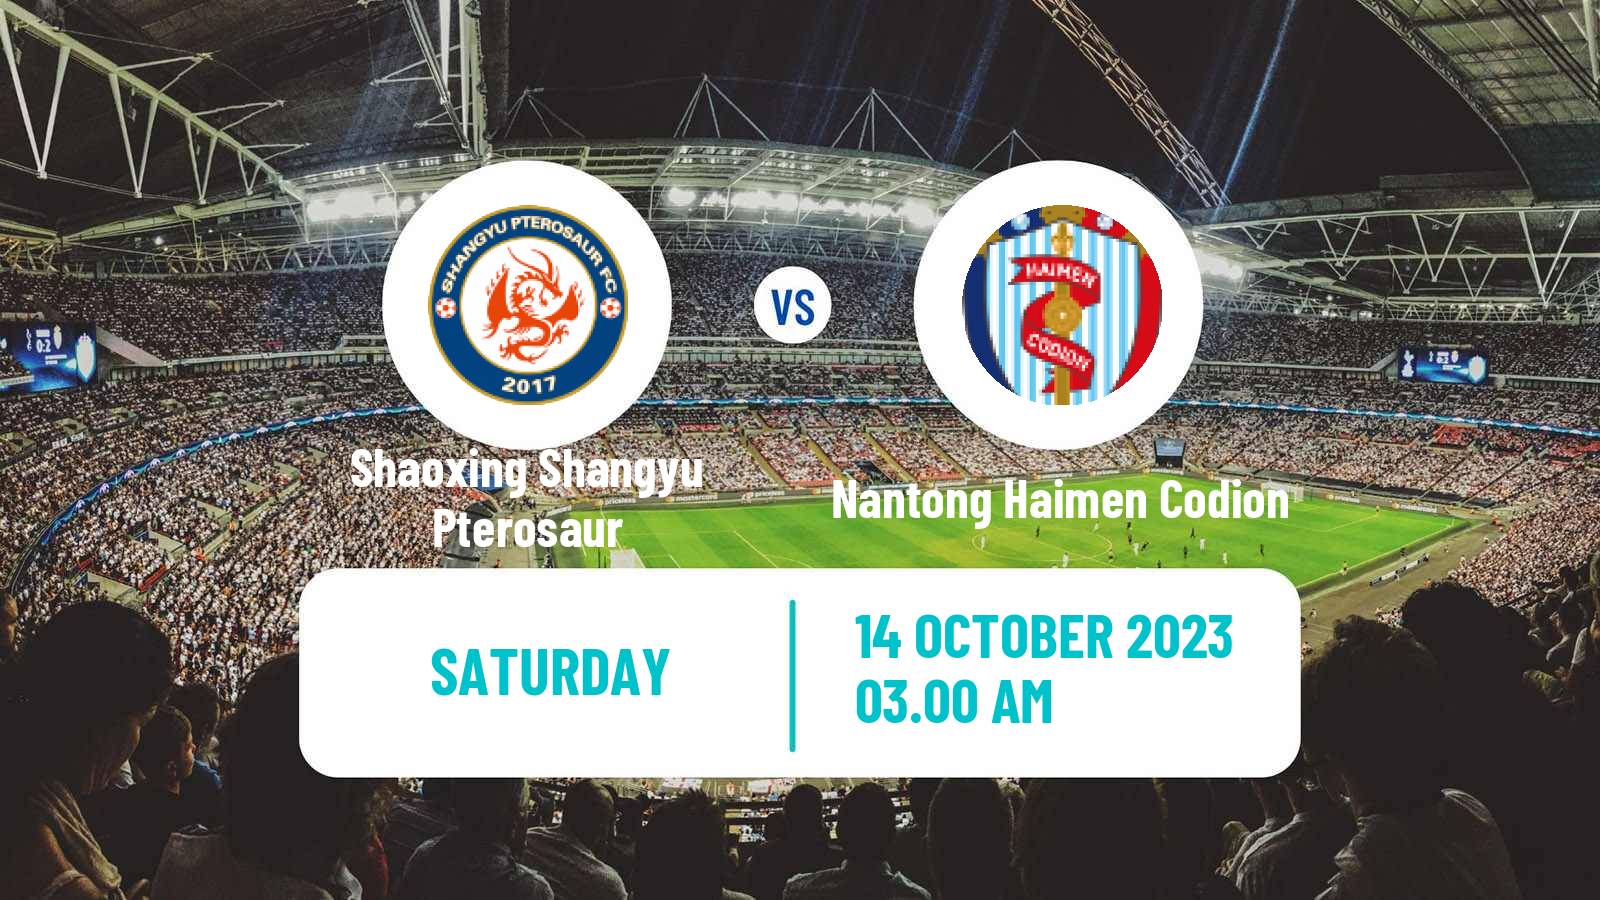 Soccer Chinese Yi League Shaoxing Shangyu Pterosaur - Nantong Haimen Codion